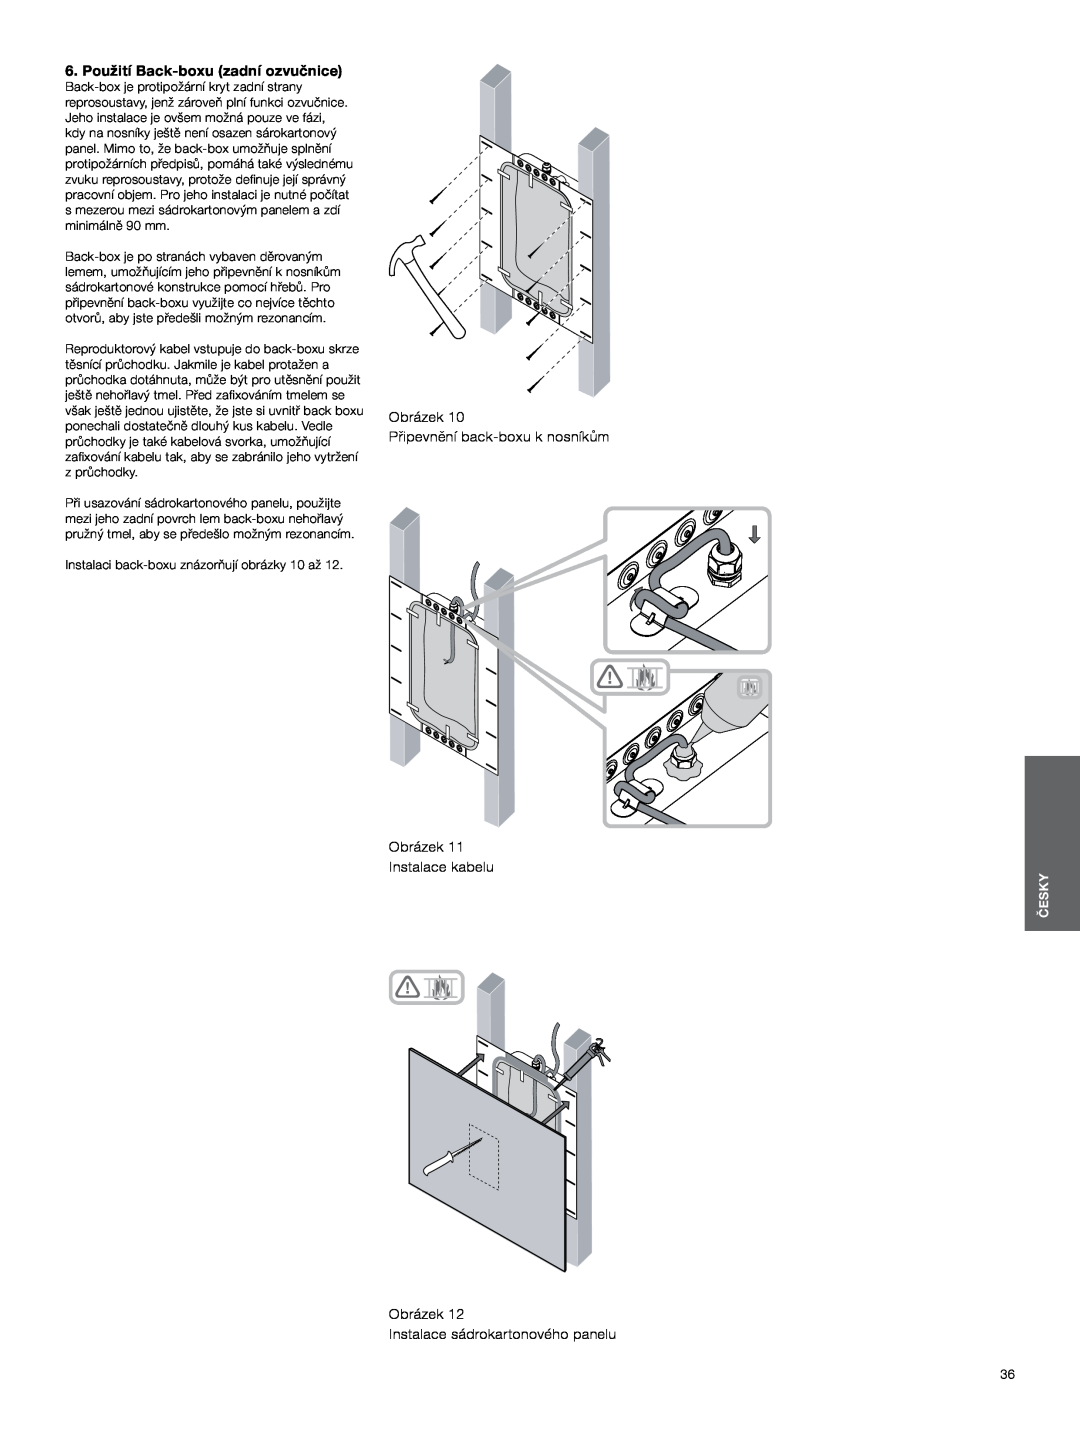 Bowers & Wilkins CWM3 6.Použití Back-boxuzadní ozvučnice, Obrázek Připevnění back-boxuk nosníkům Obrázek, Instalace kabelu 